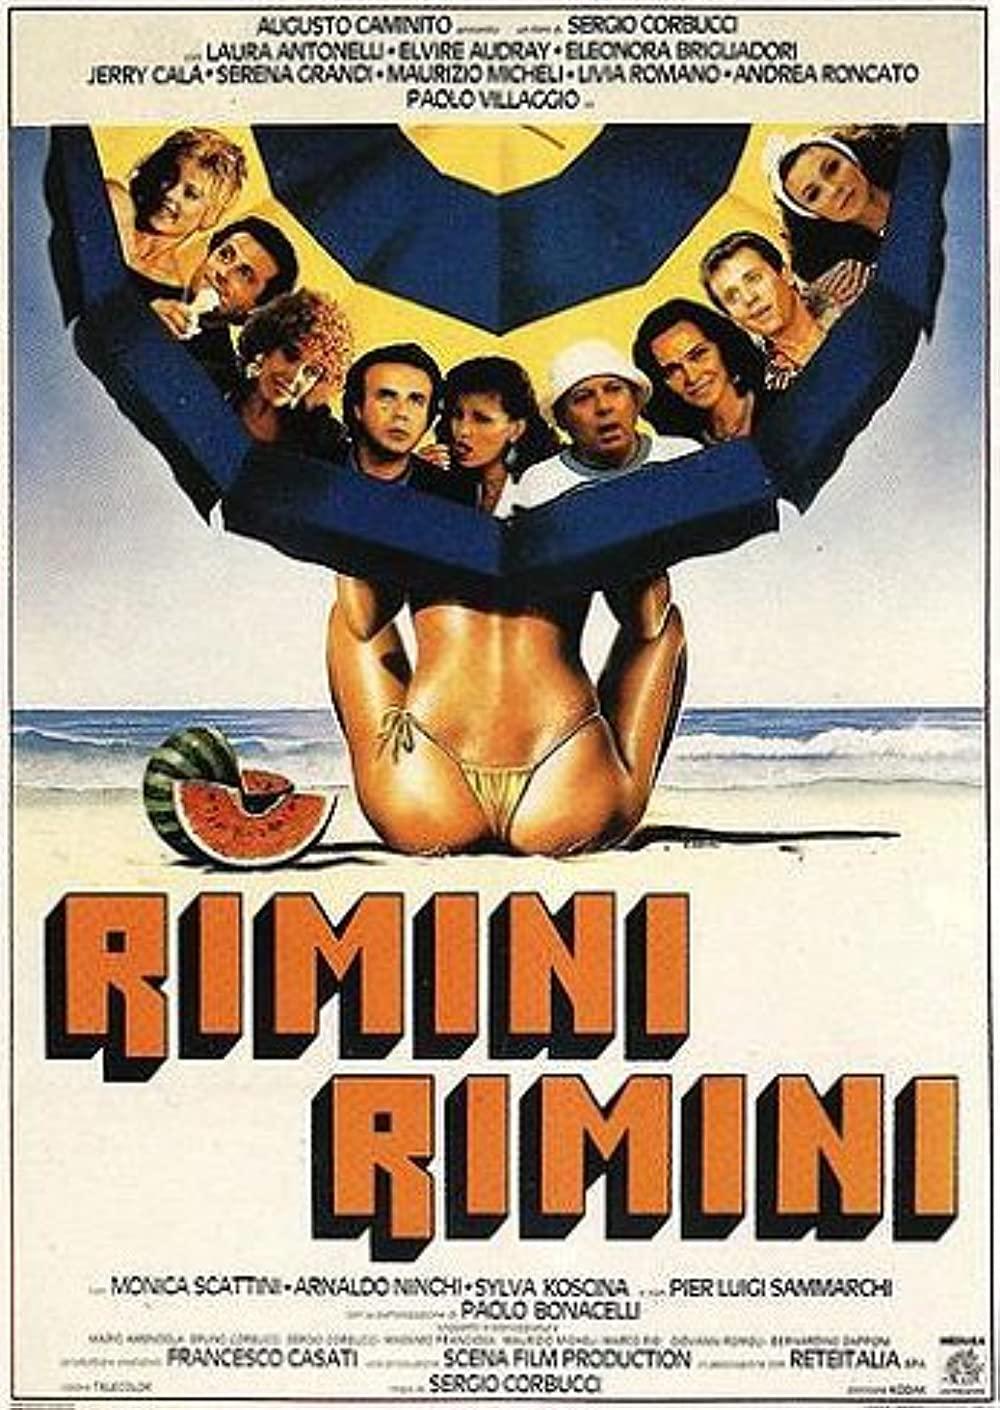 Rimini, Rimini (1987)